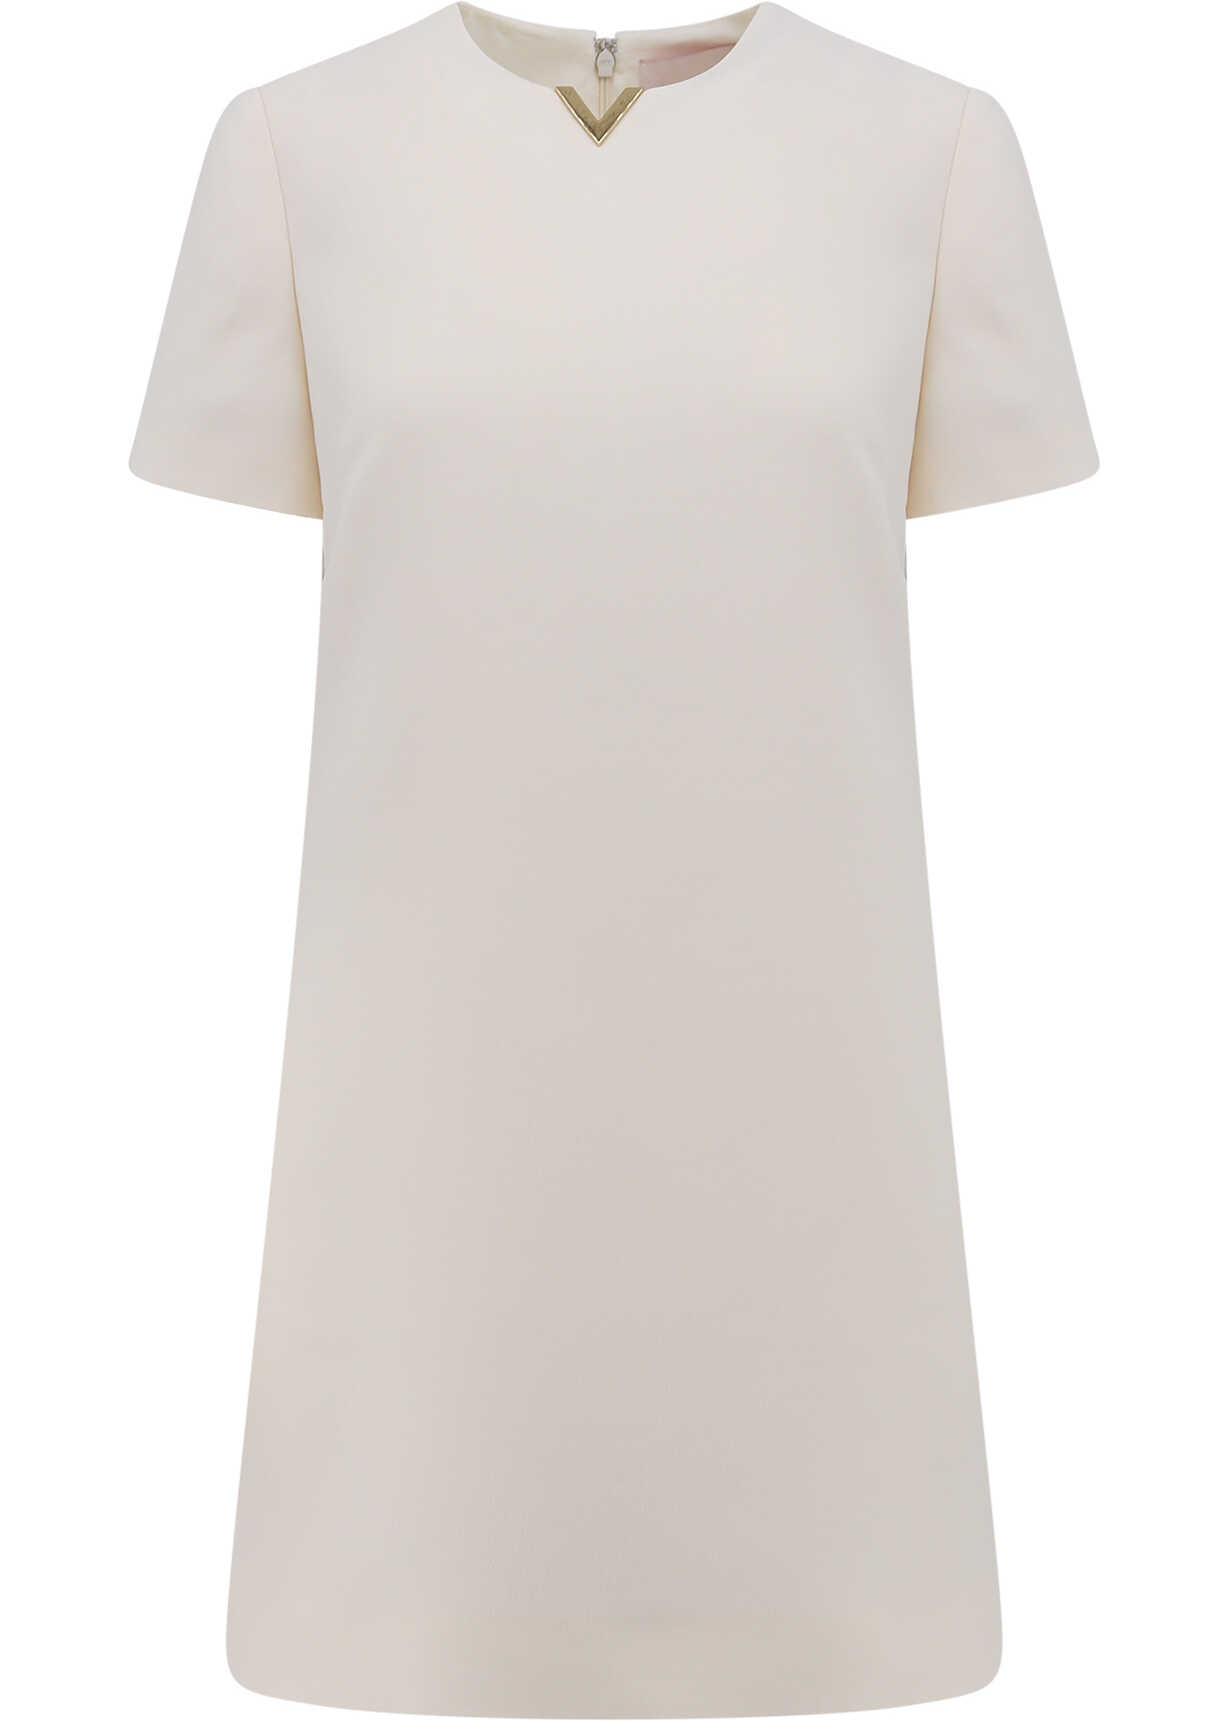 Valentino Garavani Dress White